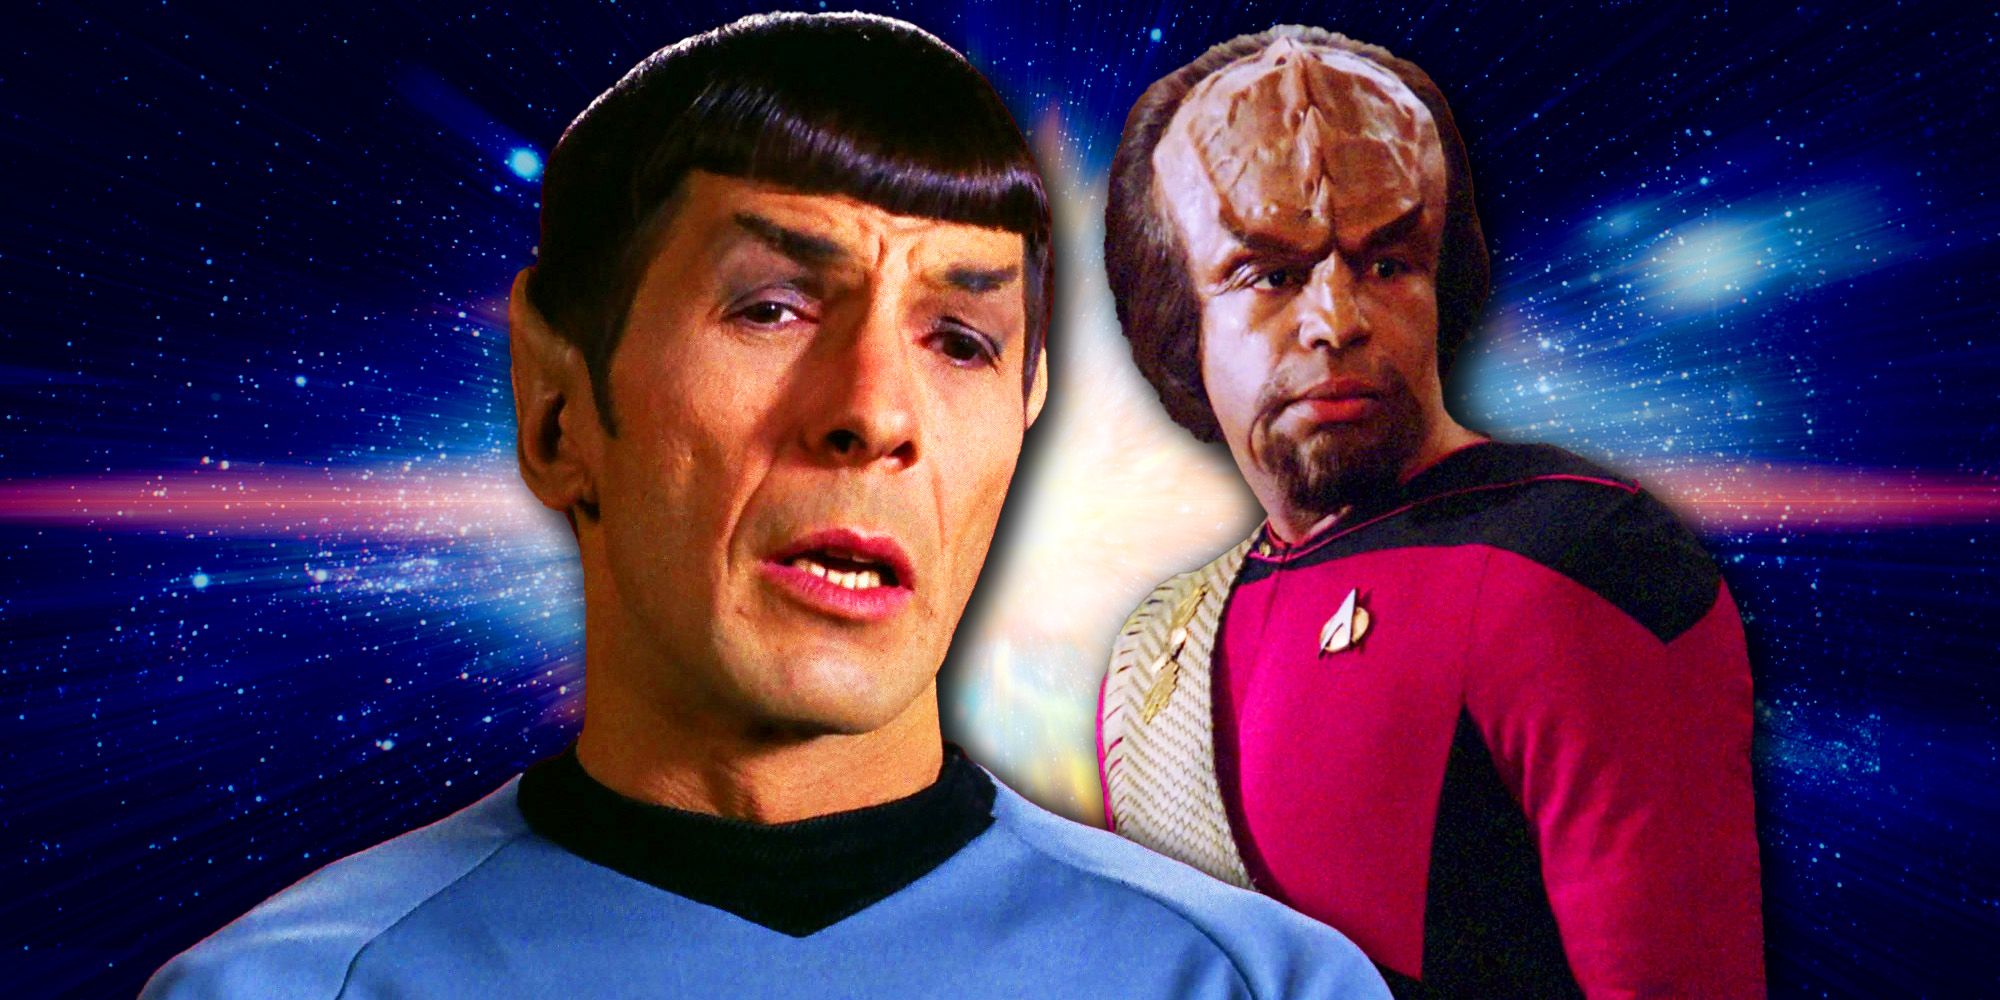 Roddenberry tuvo la misma idea original para Spock y Worf en Star Trek